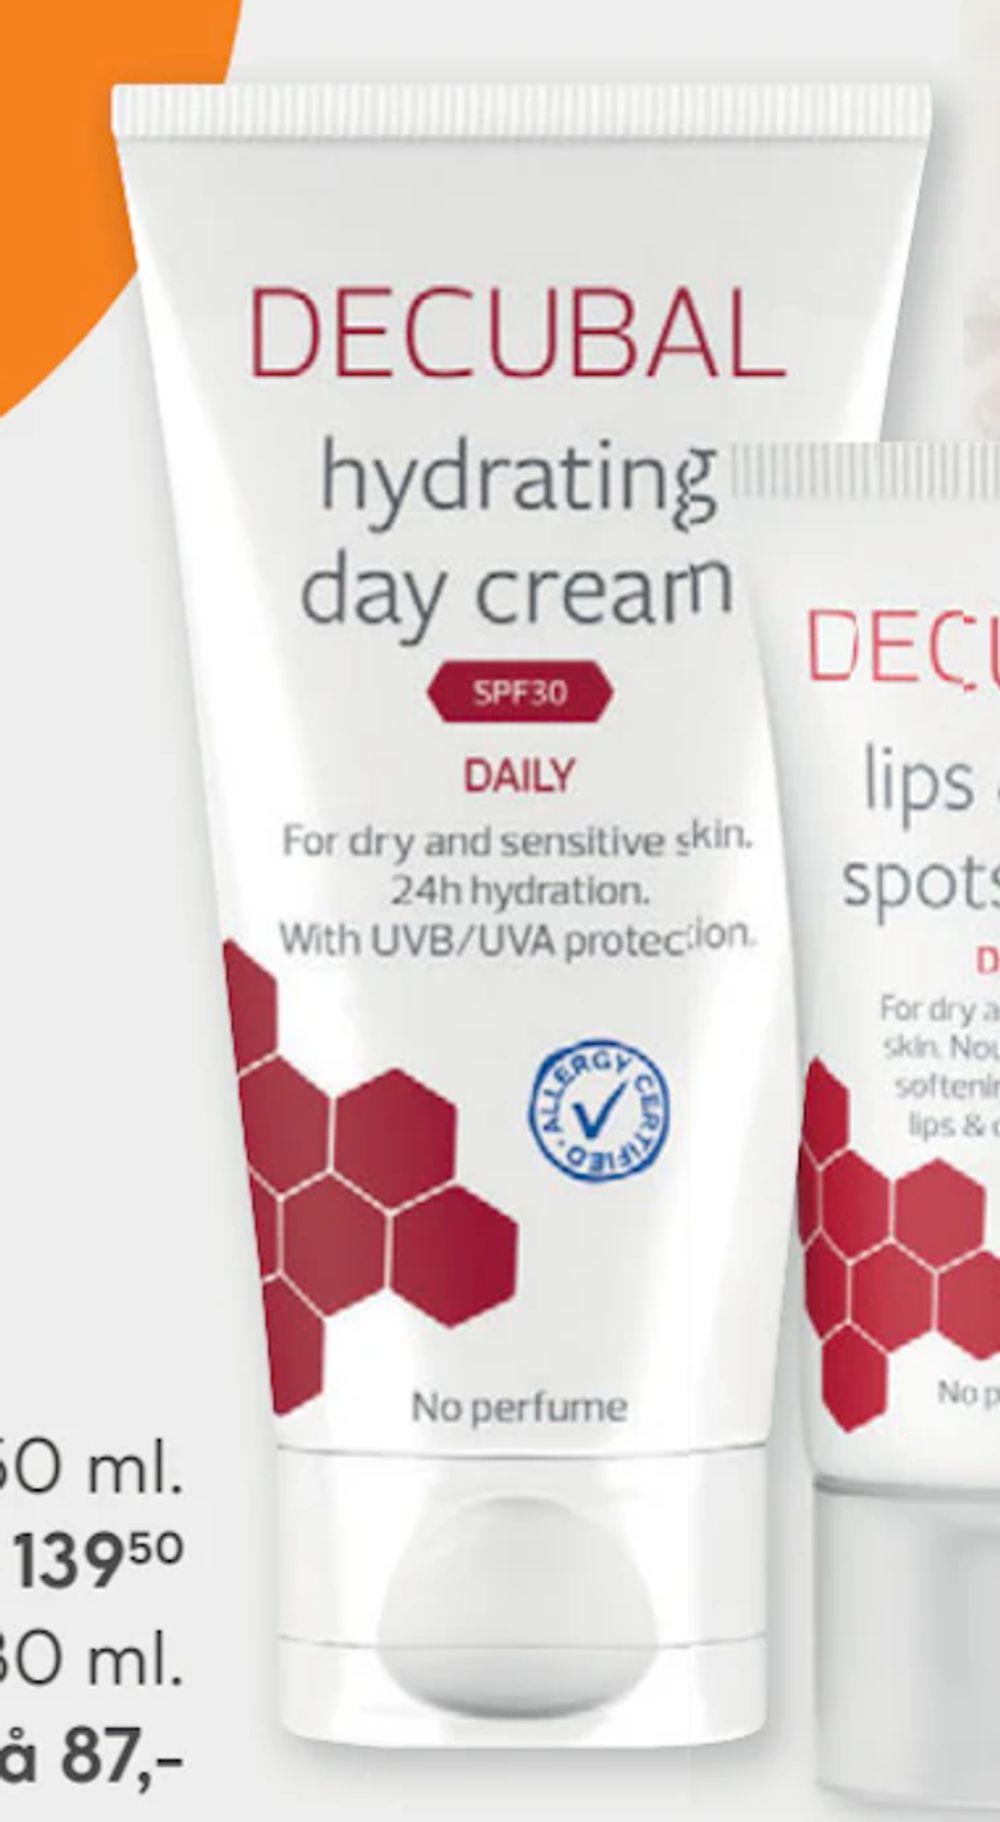 Tilbud på Hydrating Day Cream fra Vitusapotek til 139,50 kr